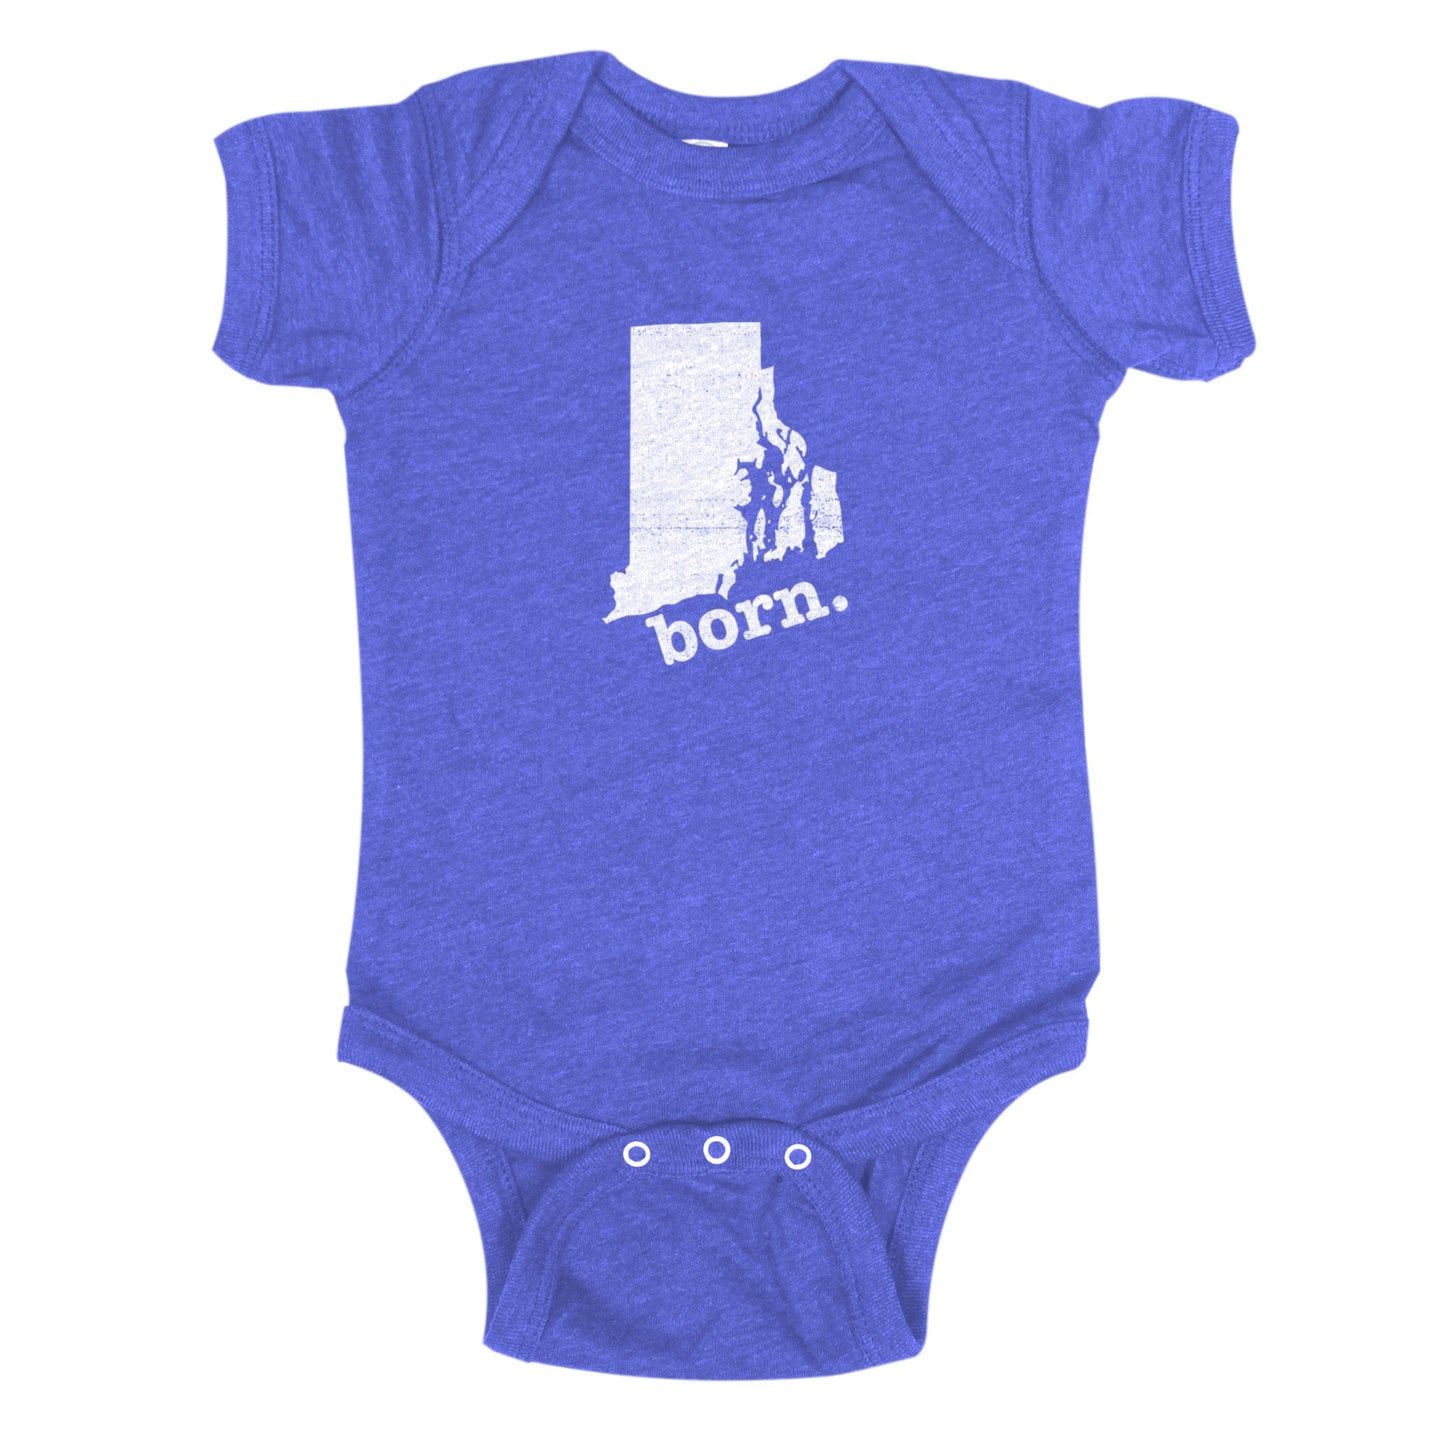 born. Baby Bodysuit - Rhode Island